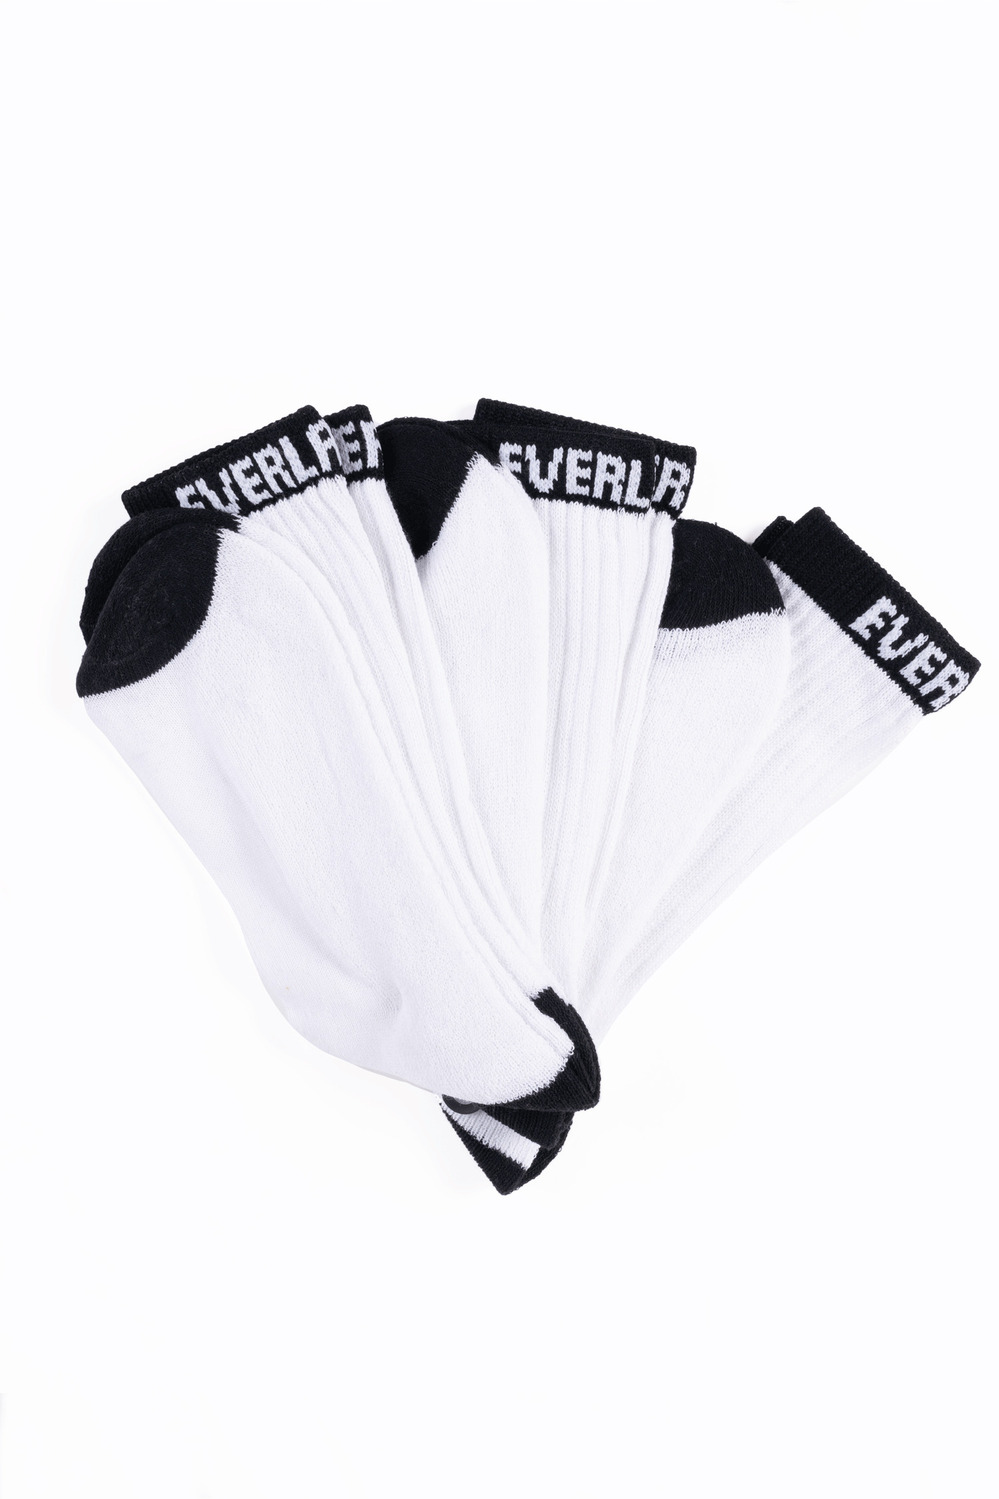 Everlast - Men's crew sport socks, 3 pairs. Colour: white